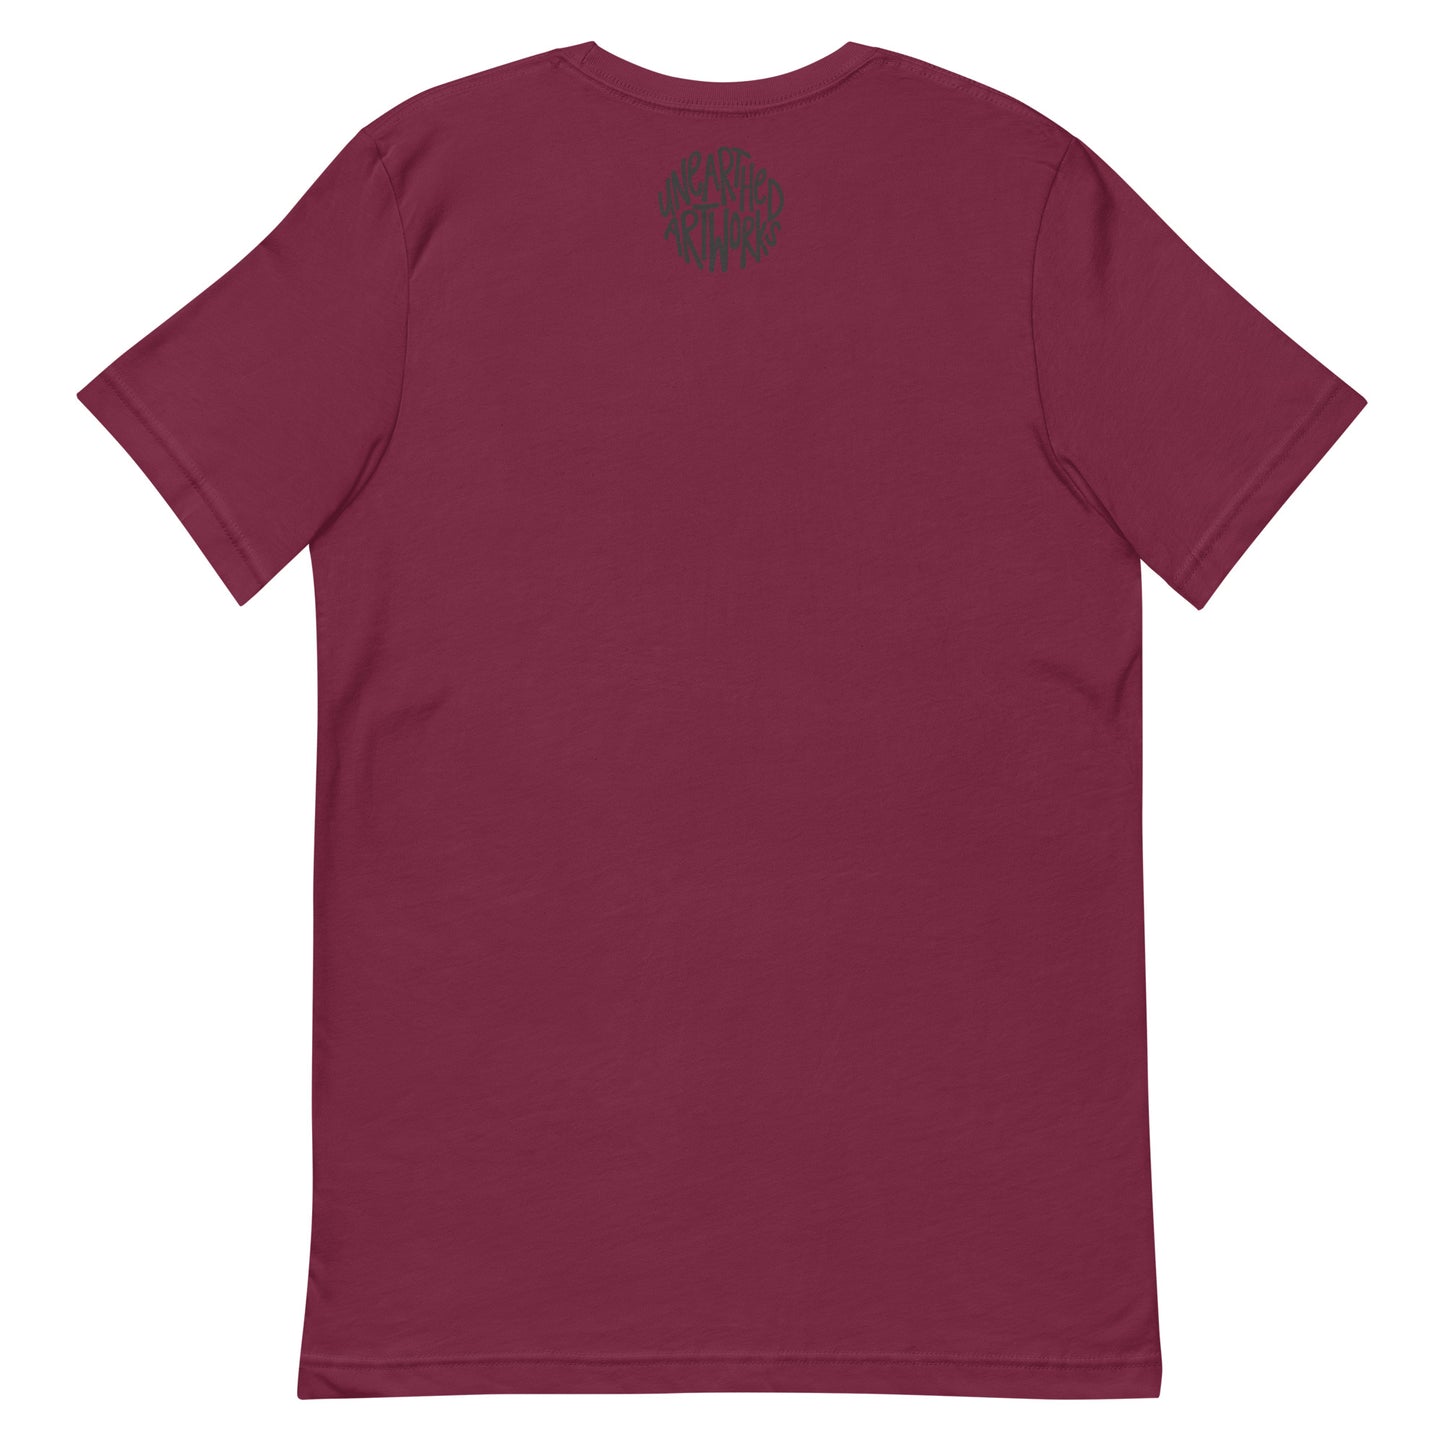 bishop landscape t-shirt (design on front)